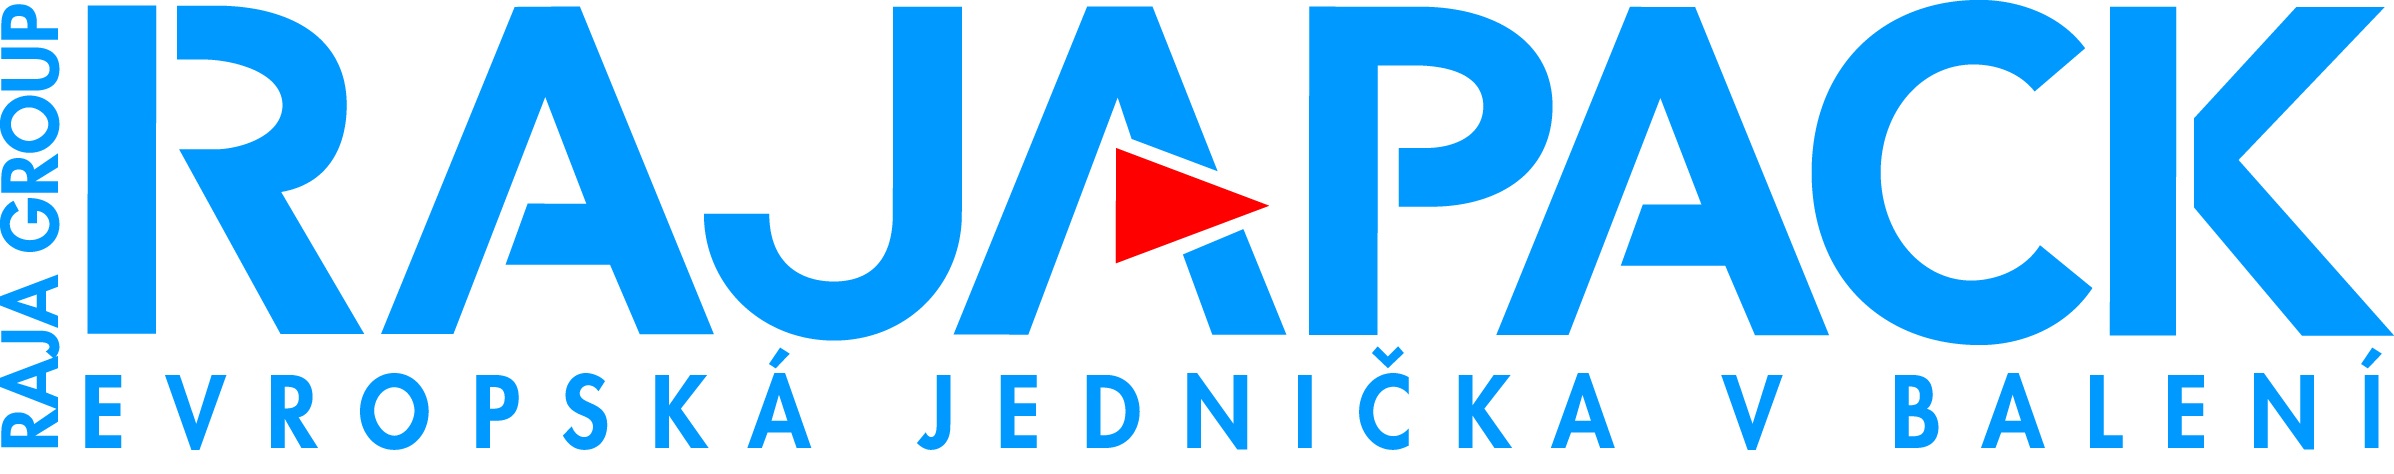 rajapack_cz-logo-blue_2394